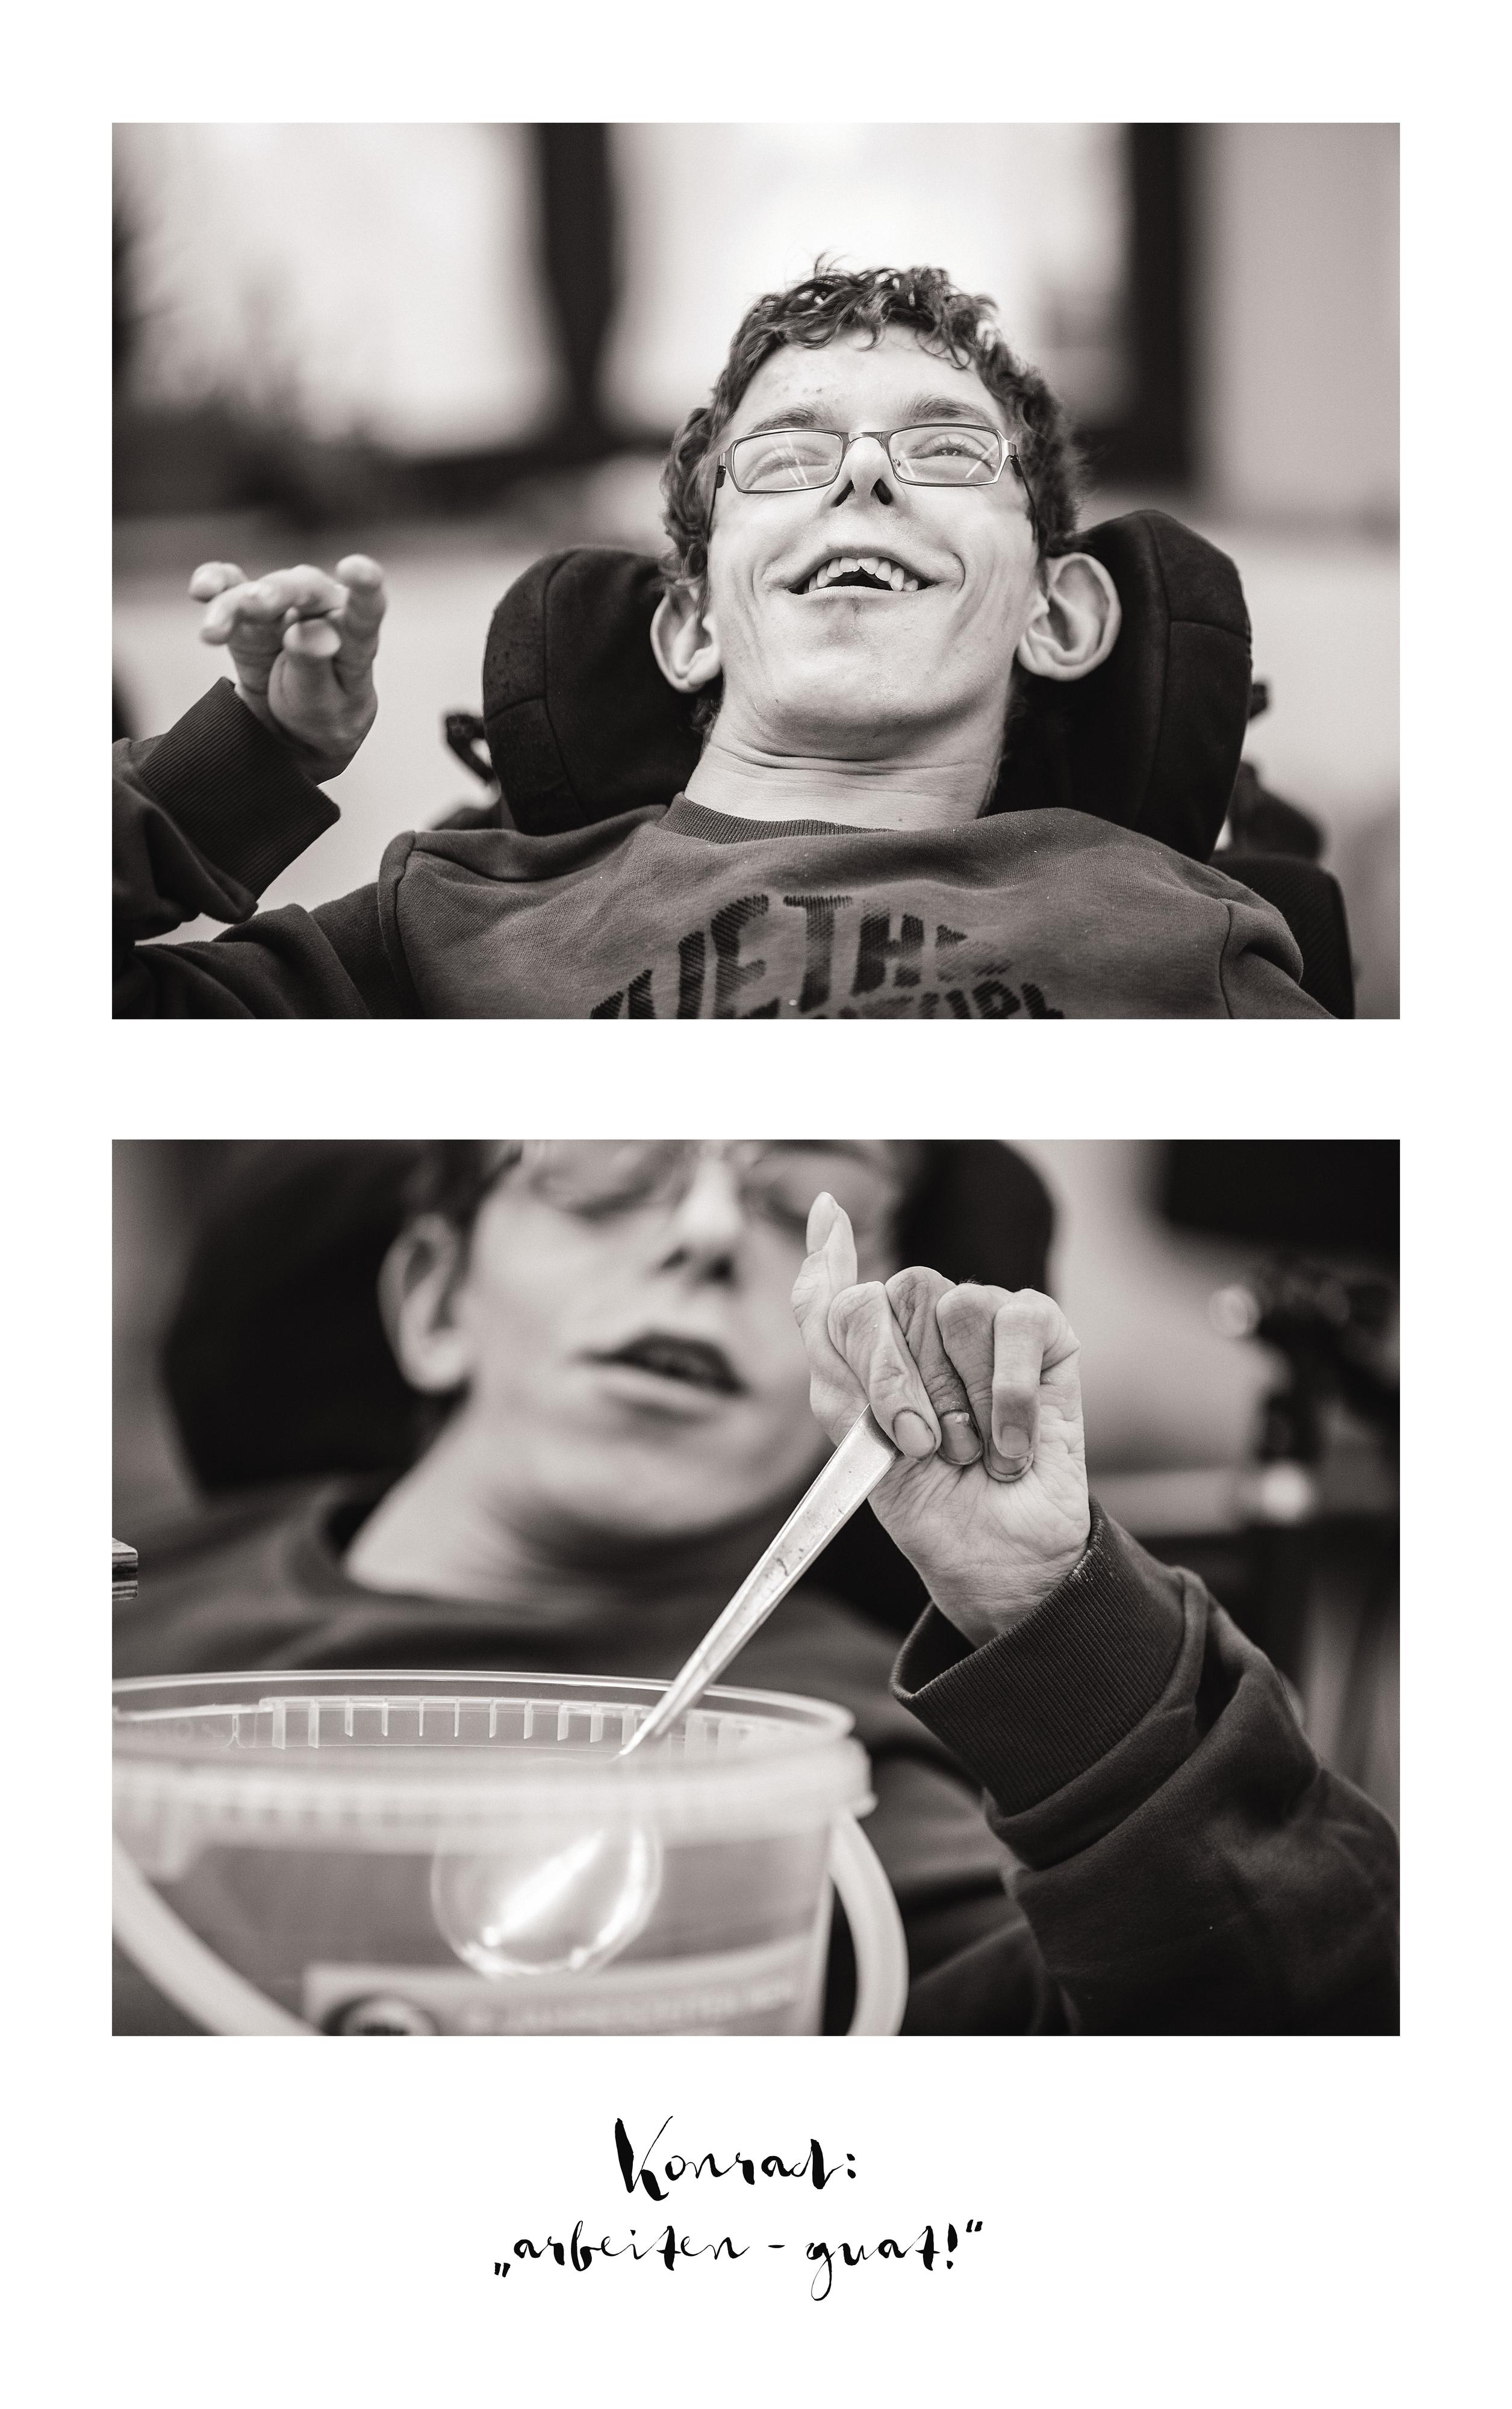 Collage aus 2 Bildern: Der gleiche junge Mann beim Lachen und beim Essen. Er ist spastisch gelähmt und sitzt im Rollstuhl. Bildunterschrift: Konrad: "arbeiten - guat!"